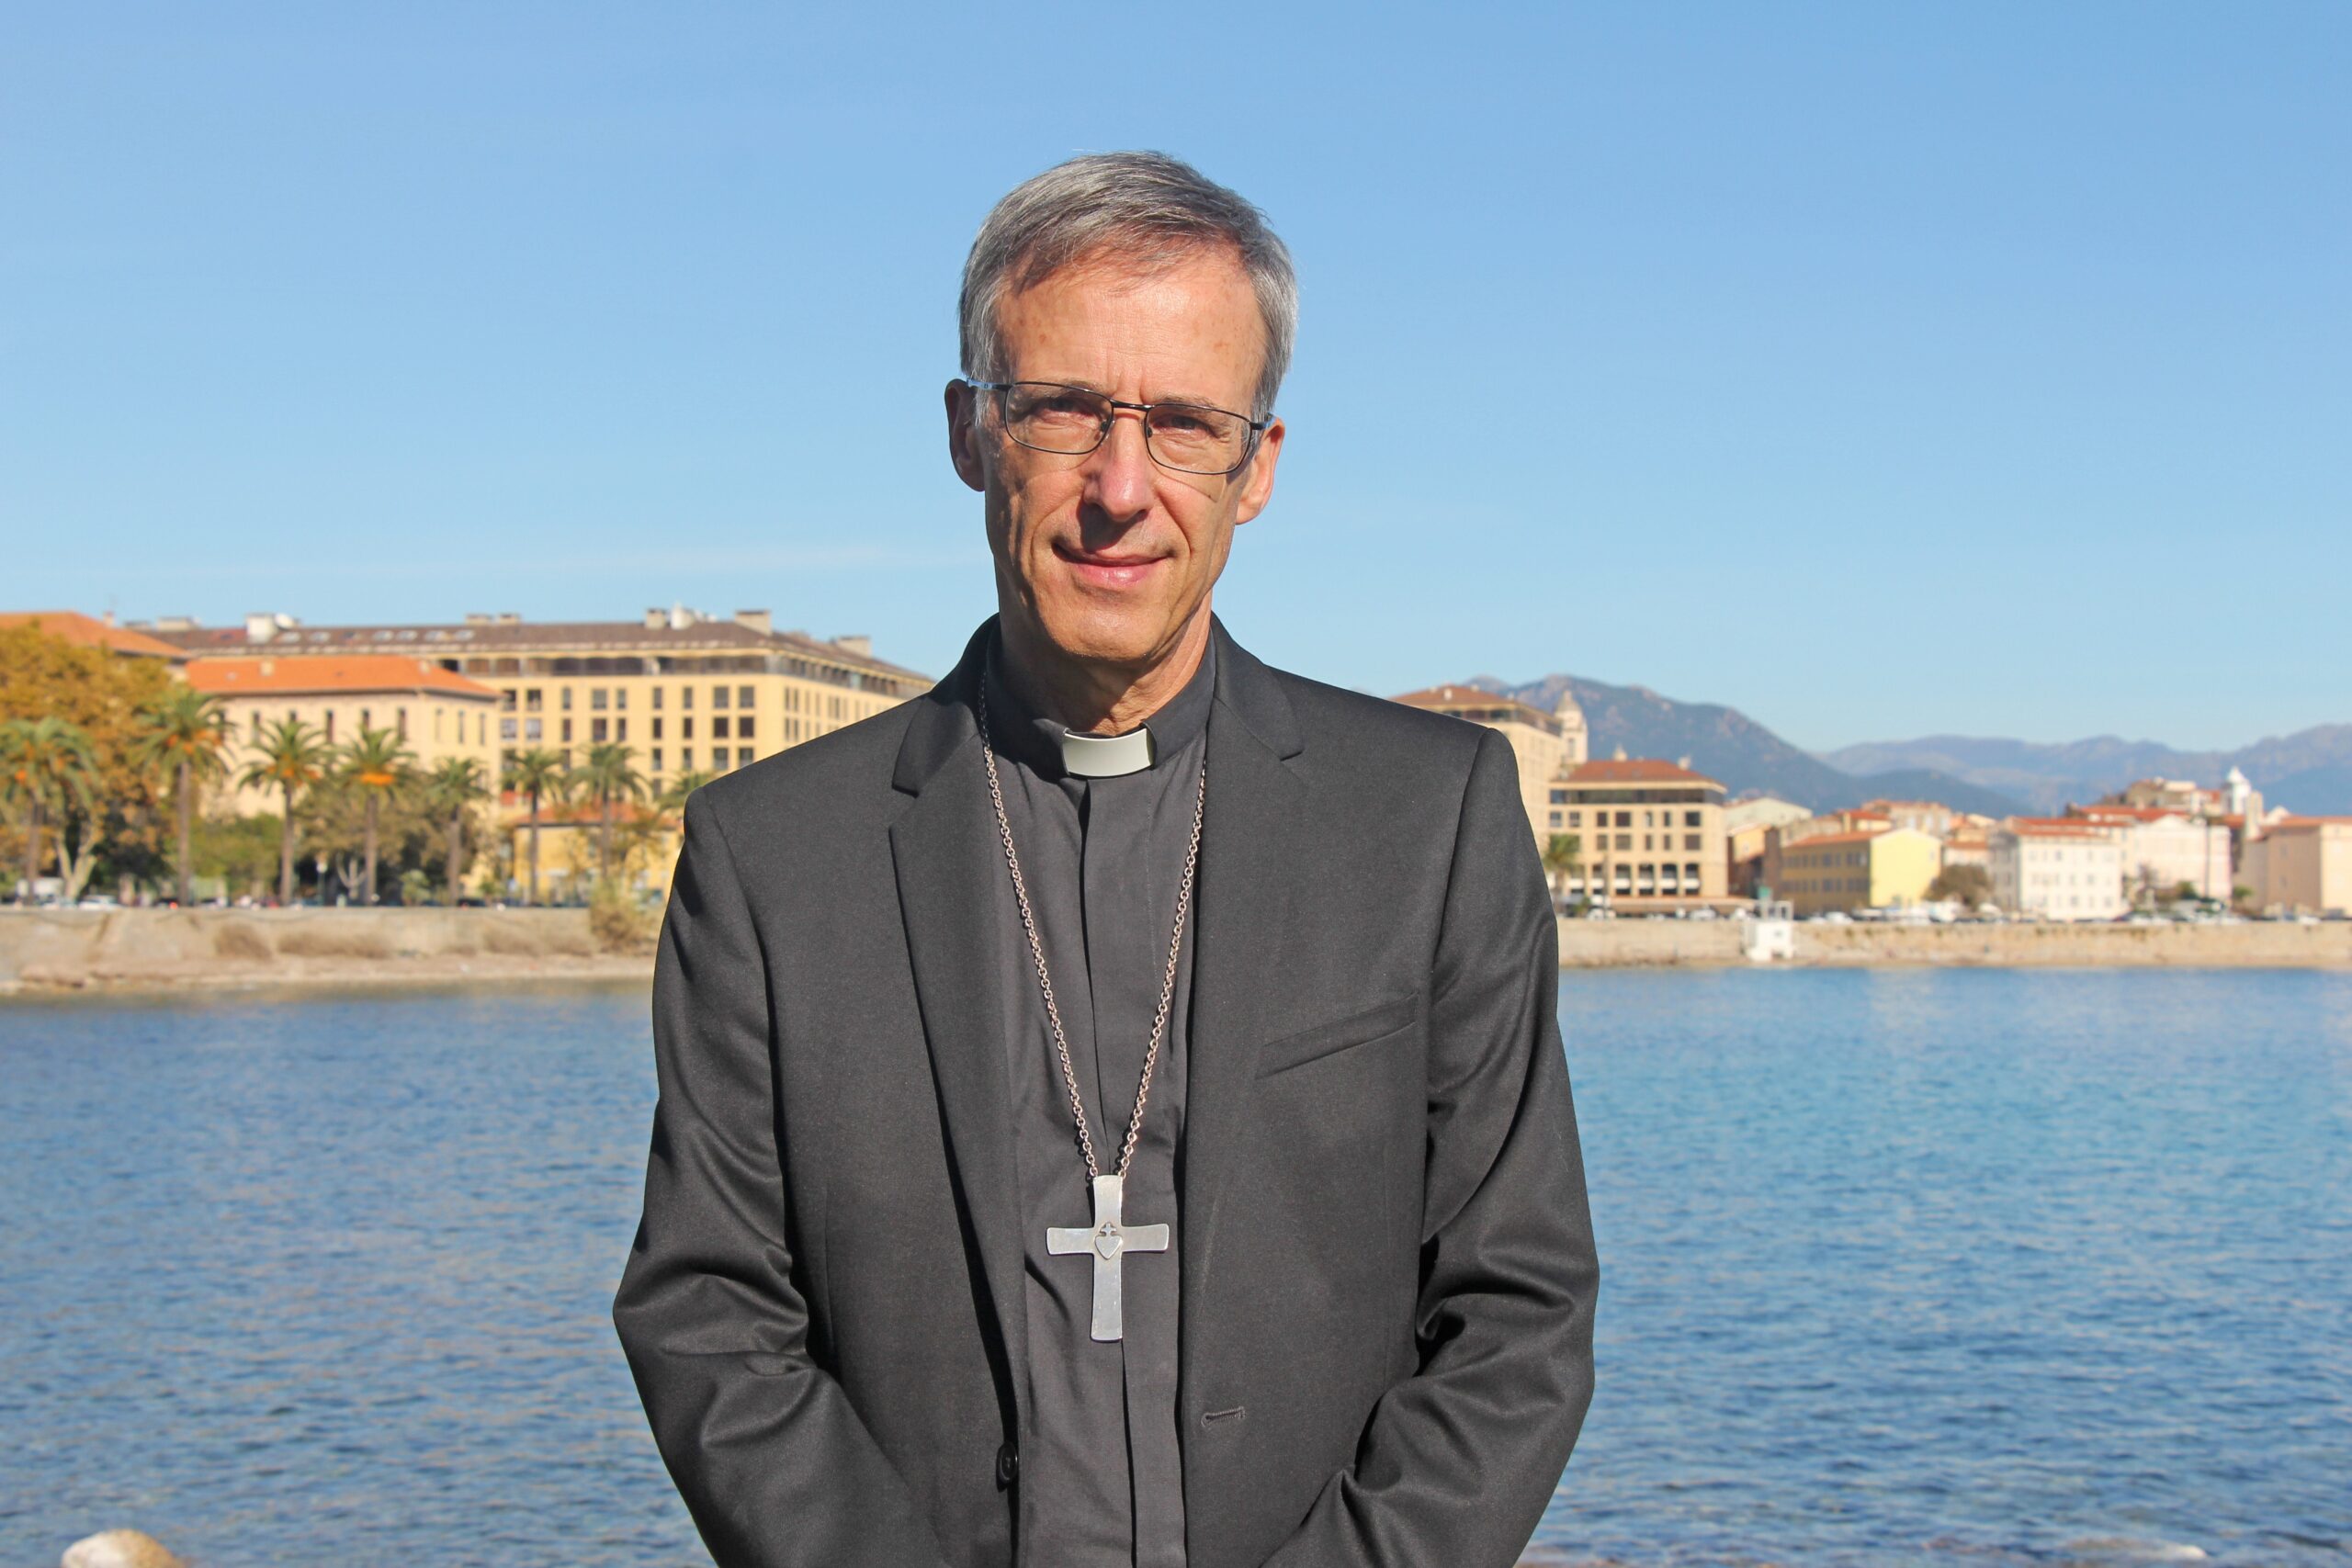 Епископ Оливье де Жерме назначен новым архиепископом Лиона